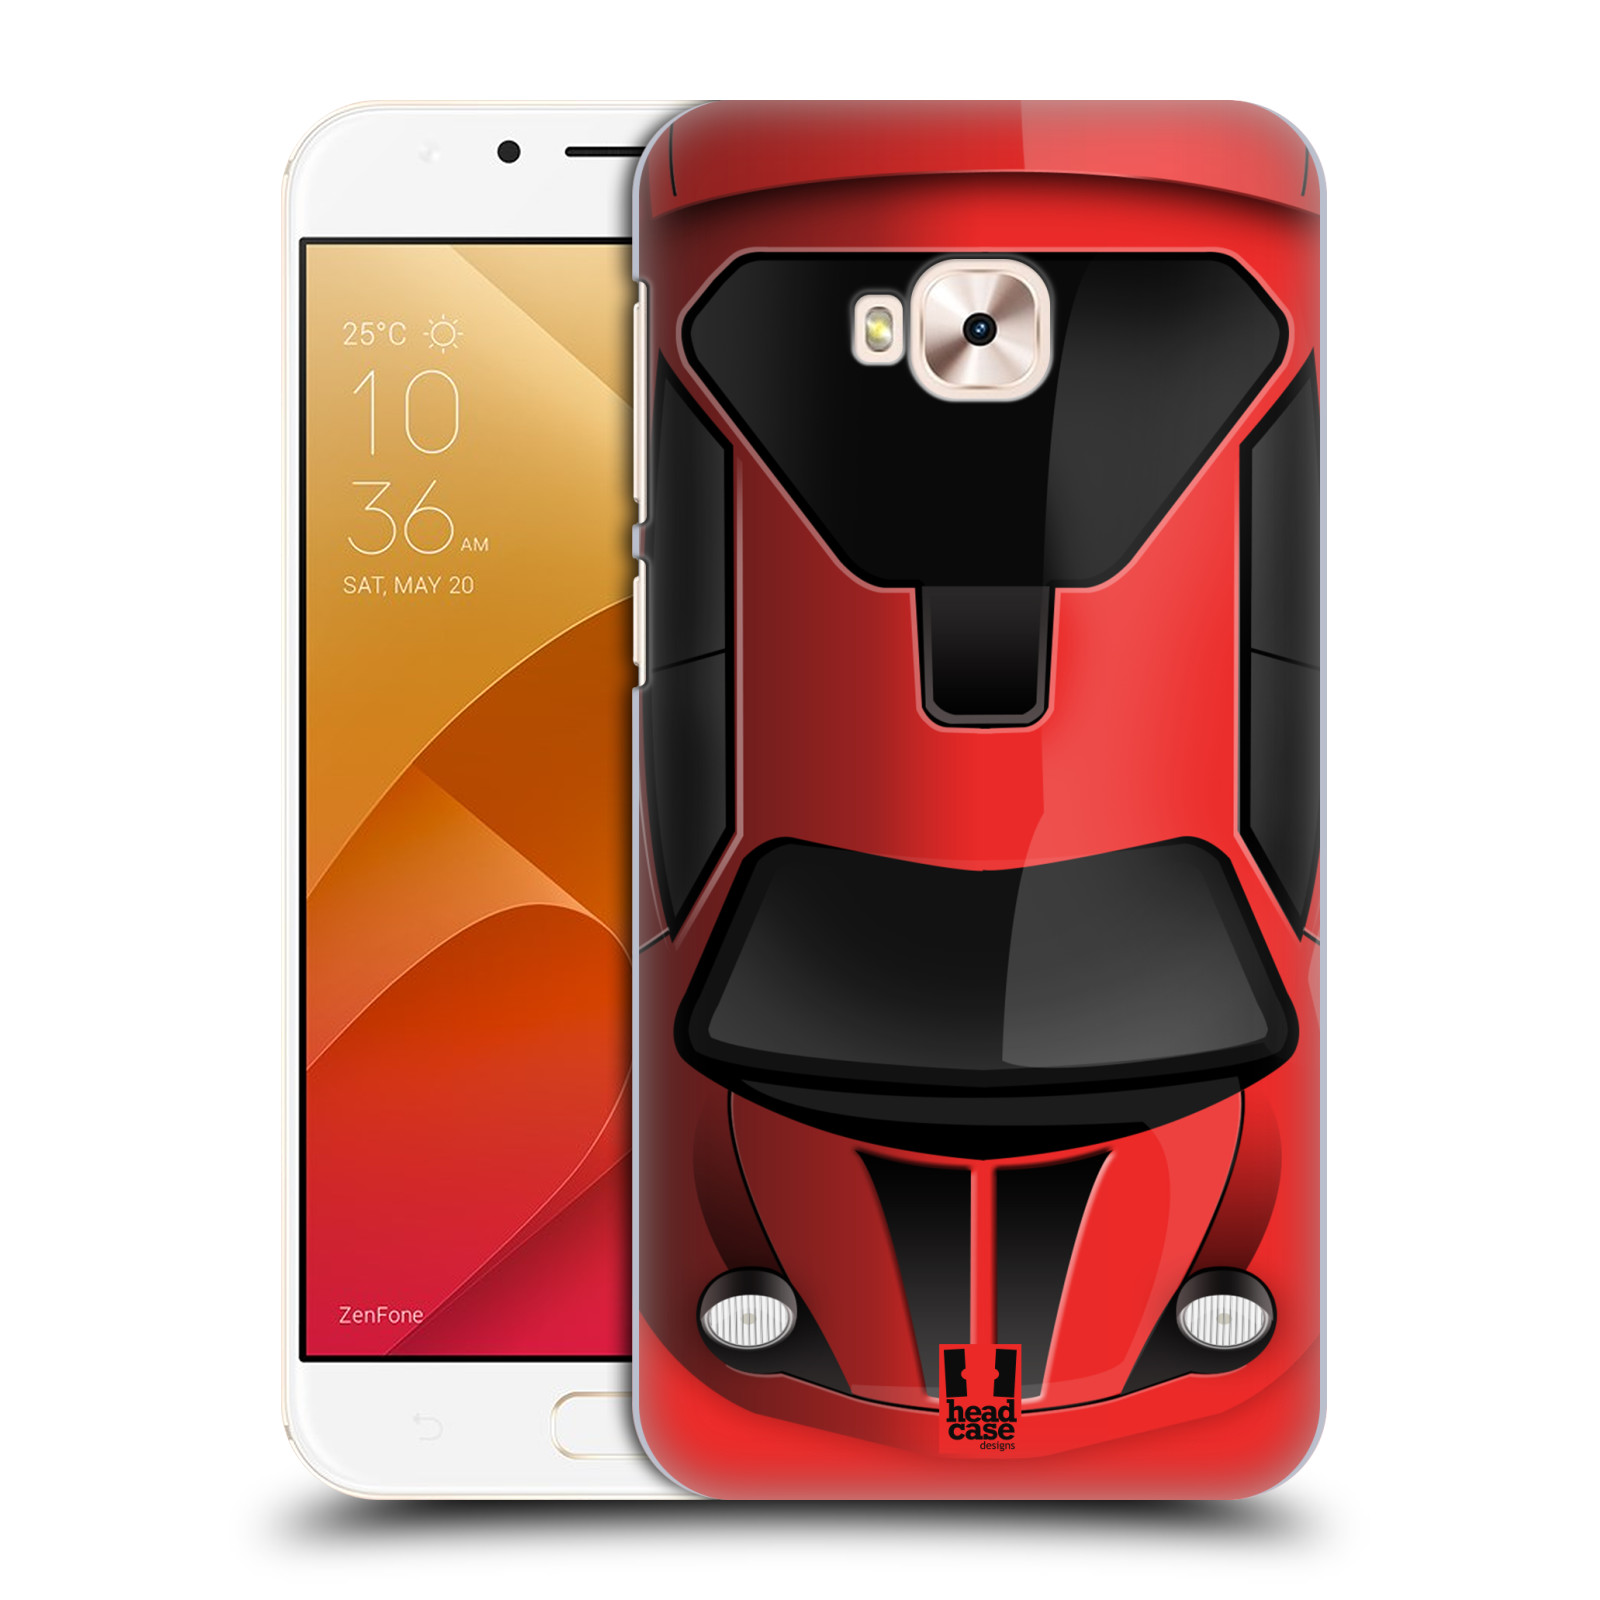 HEAD CASE plastový obal na mobil Asus Zenfone 4 Selfie Pro ZD552KL vzor Auto horní pohled červená